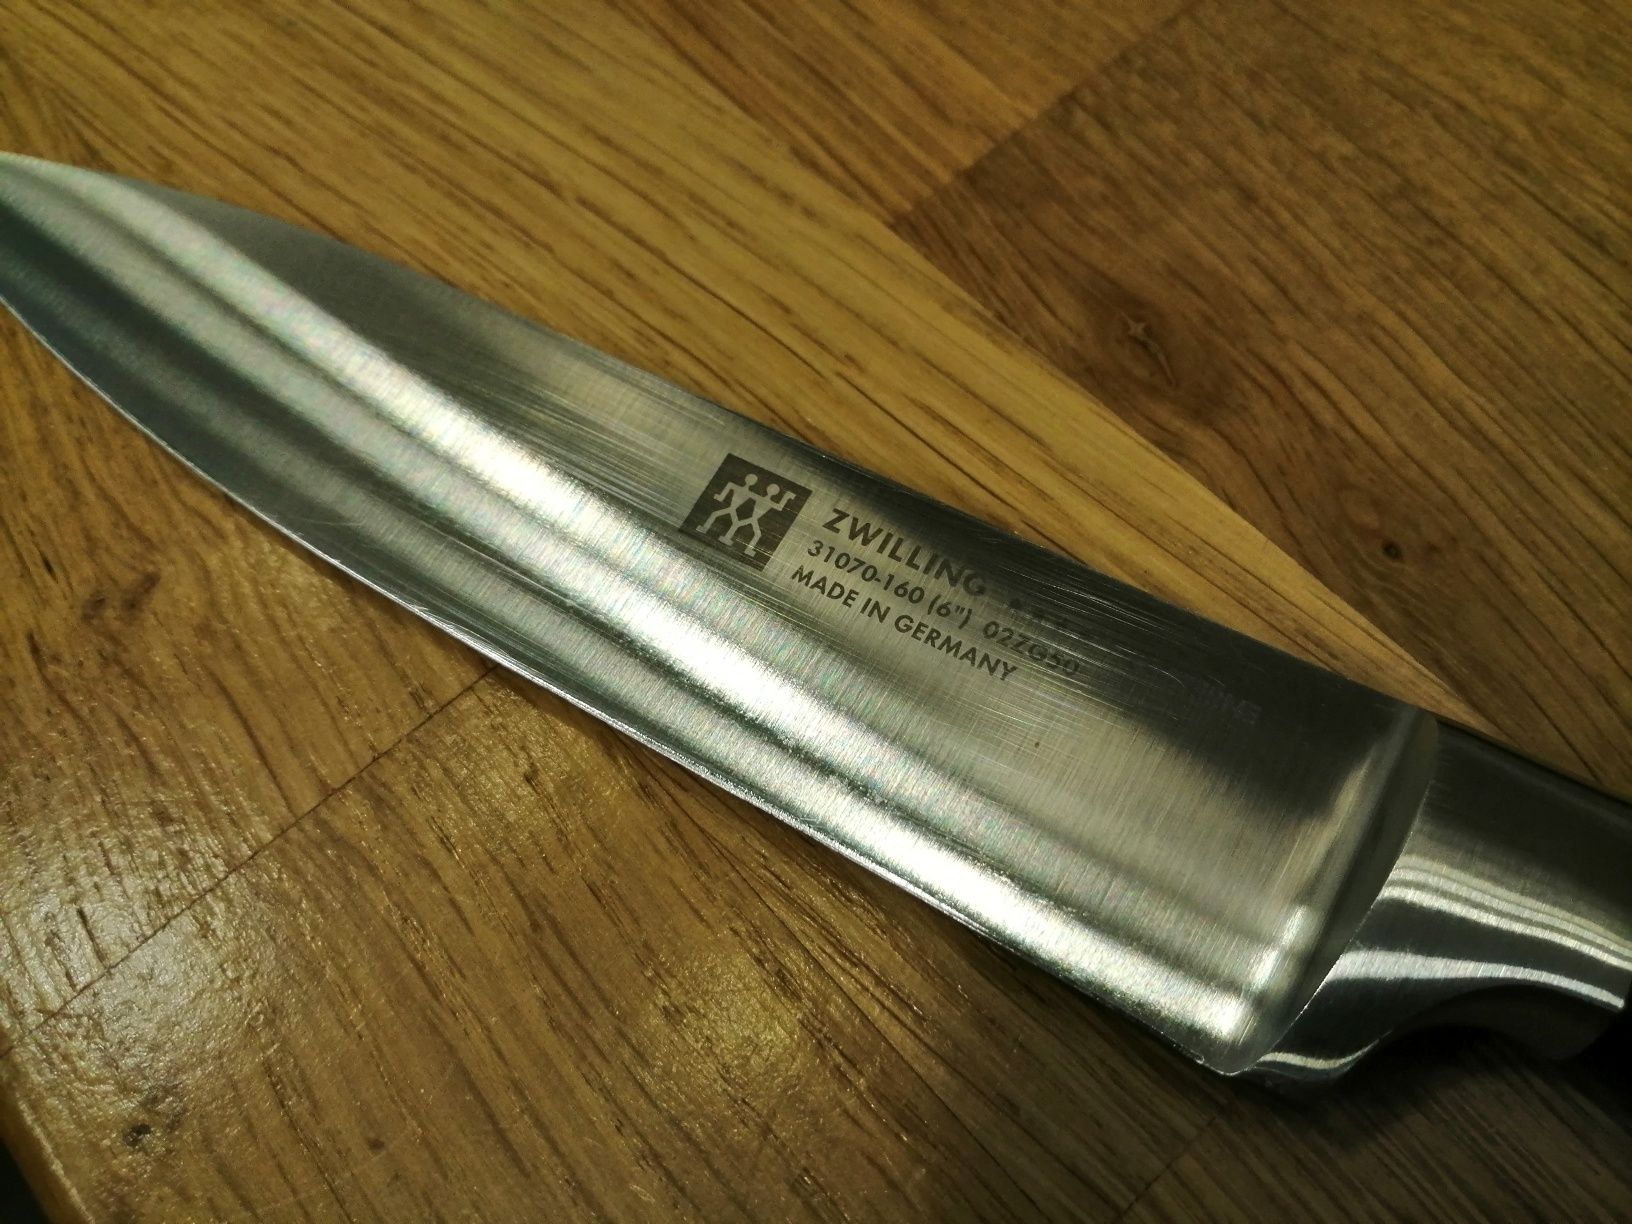 Niemiecki nóż ZWILLING Four Star 16cm uniwersalny / utility knife